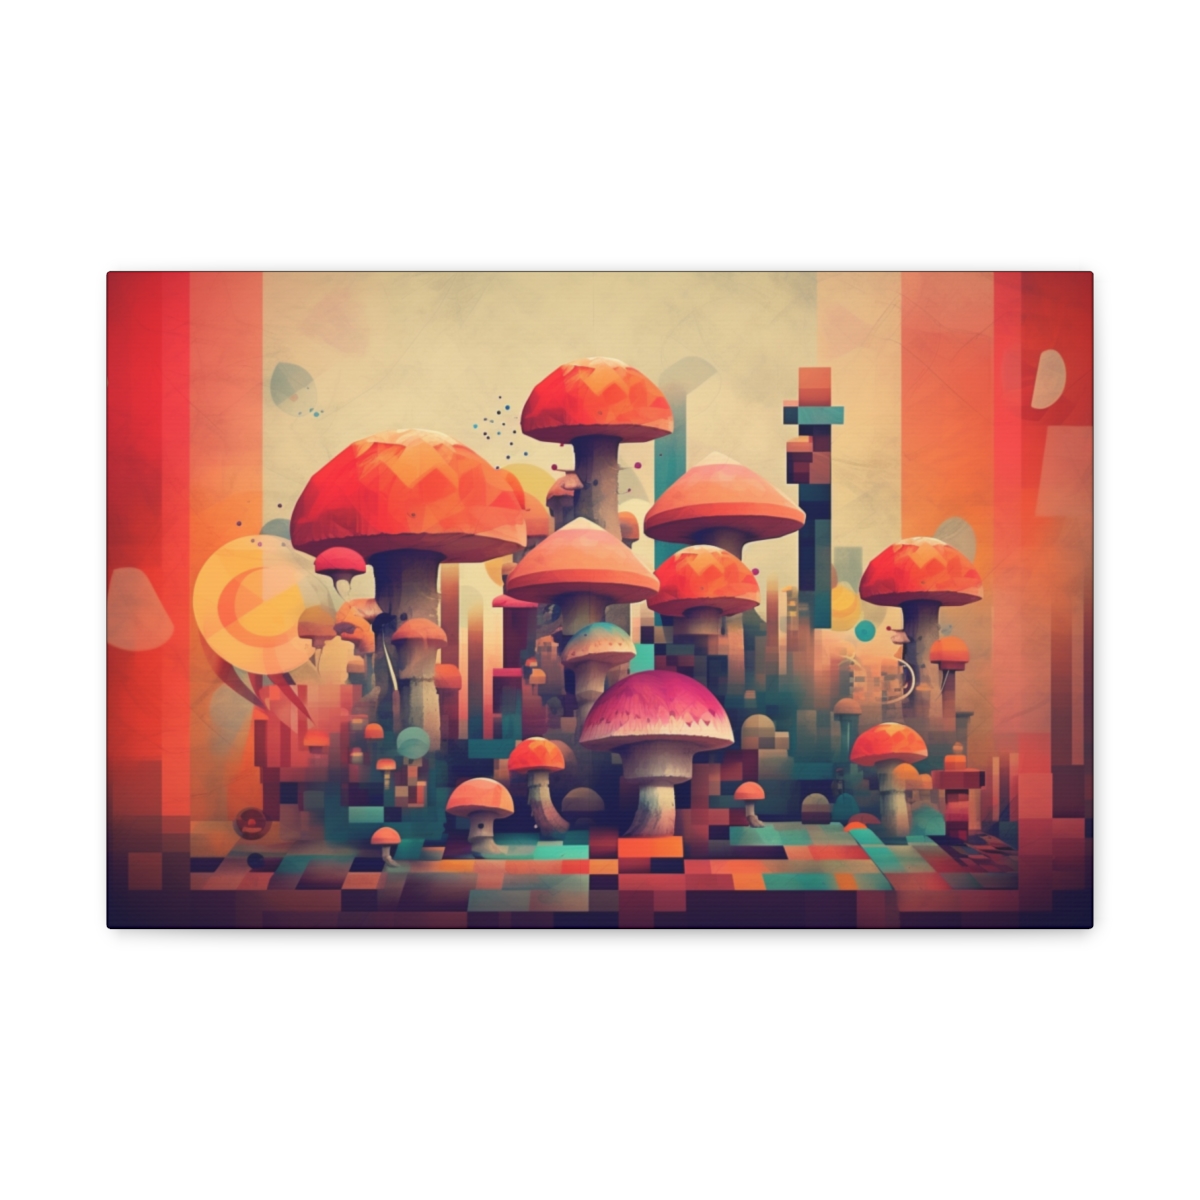 Mushroom Art Canvas Print: Brave New Shroom